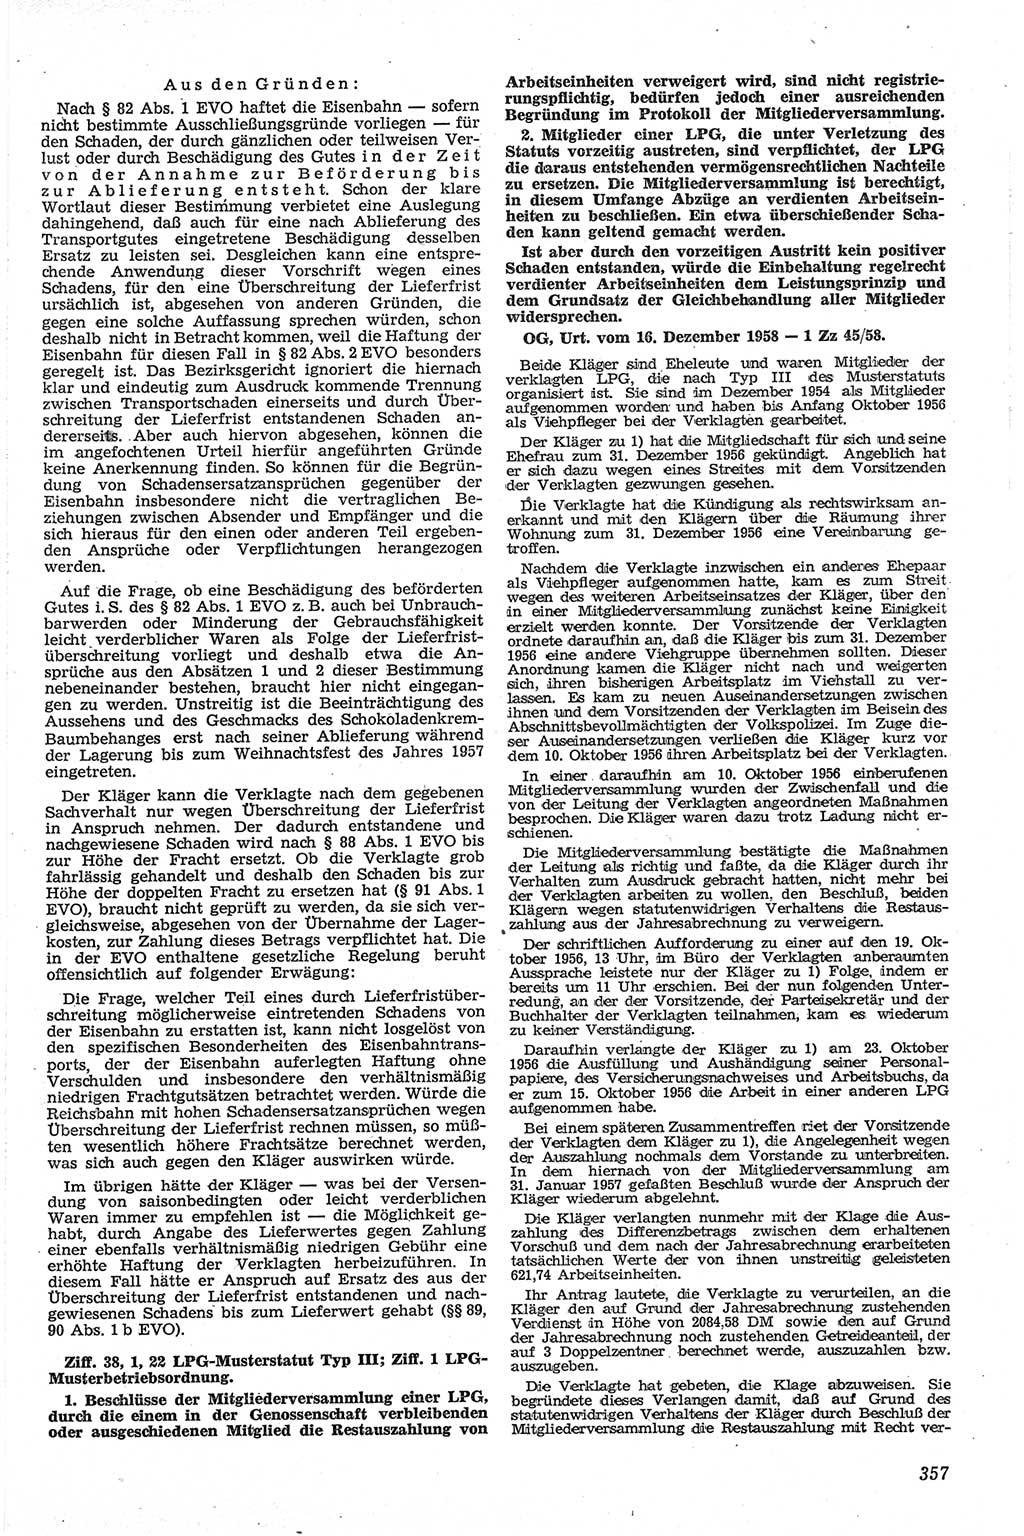 Neue Justiz (NJ), Zeitschrift für Recht und Rechtswissenschaft [Deutsche Demokratische Republik (DDR)], 13. Jahrgang 1959, Seite 357 (NJ DDR 1959, S. 357)